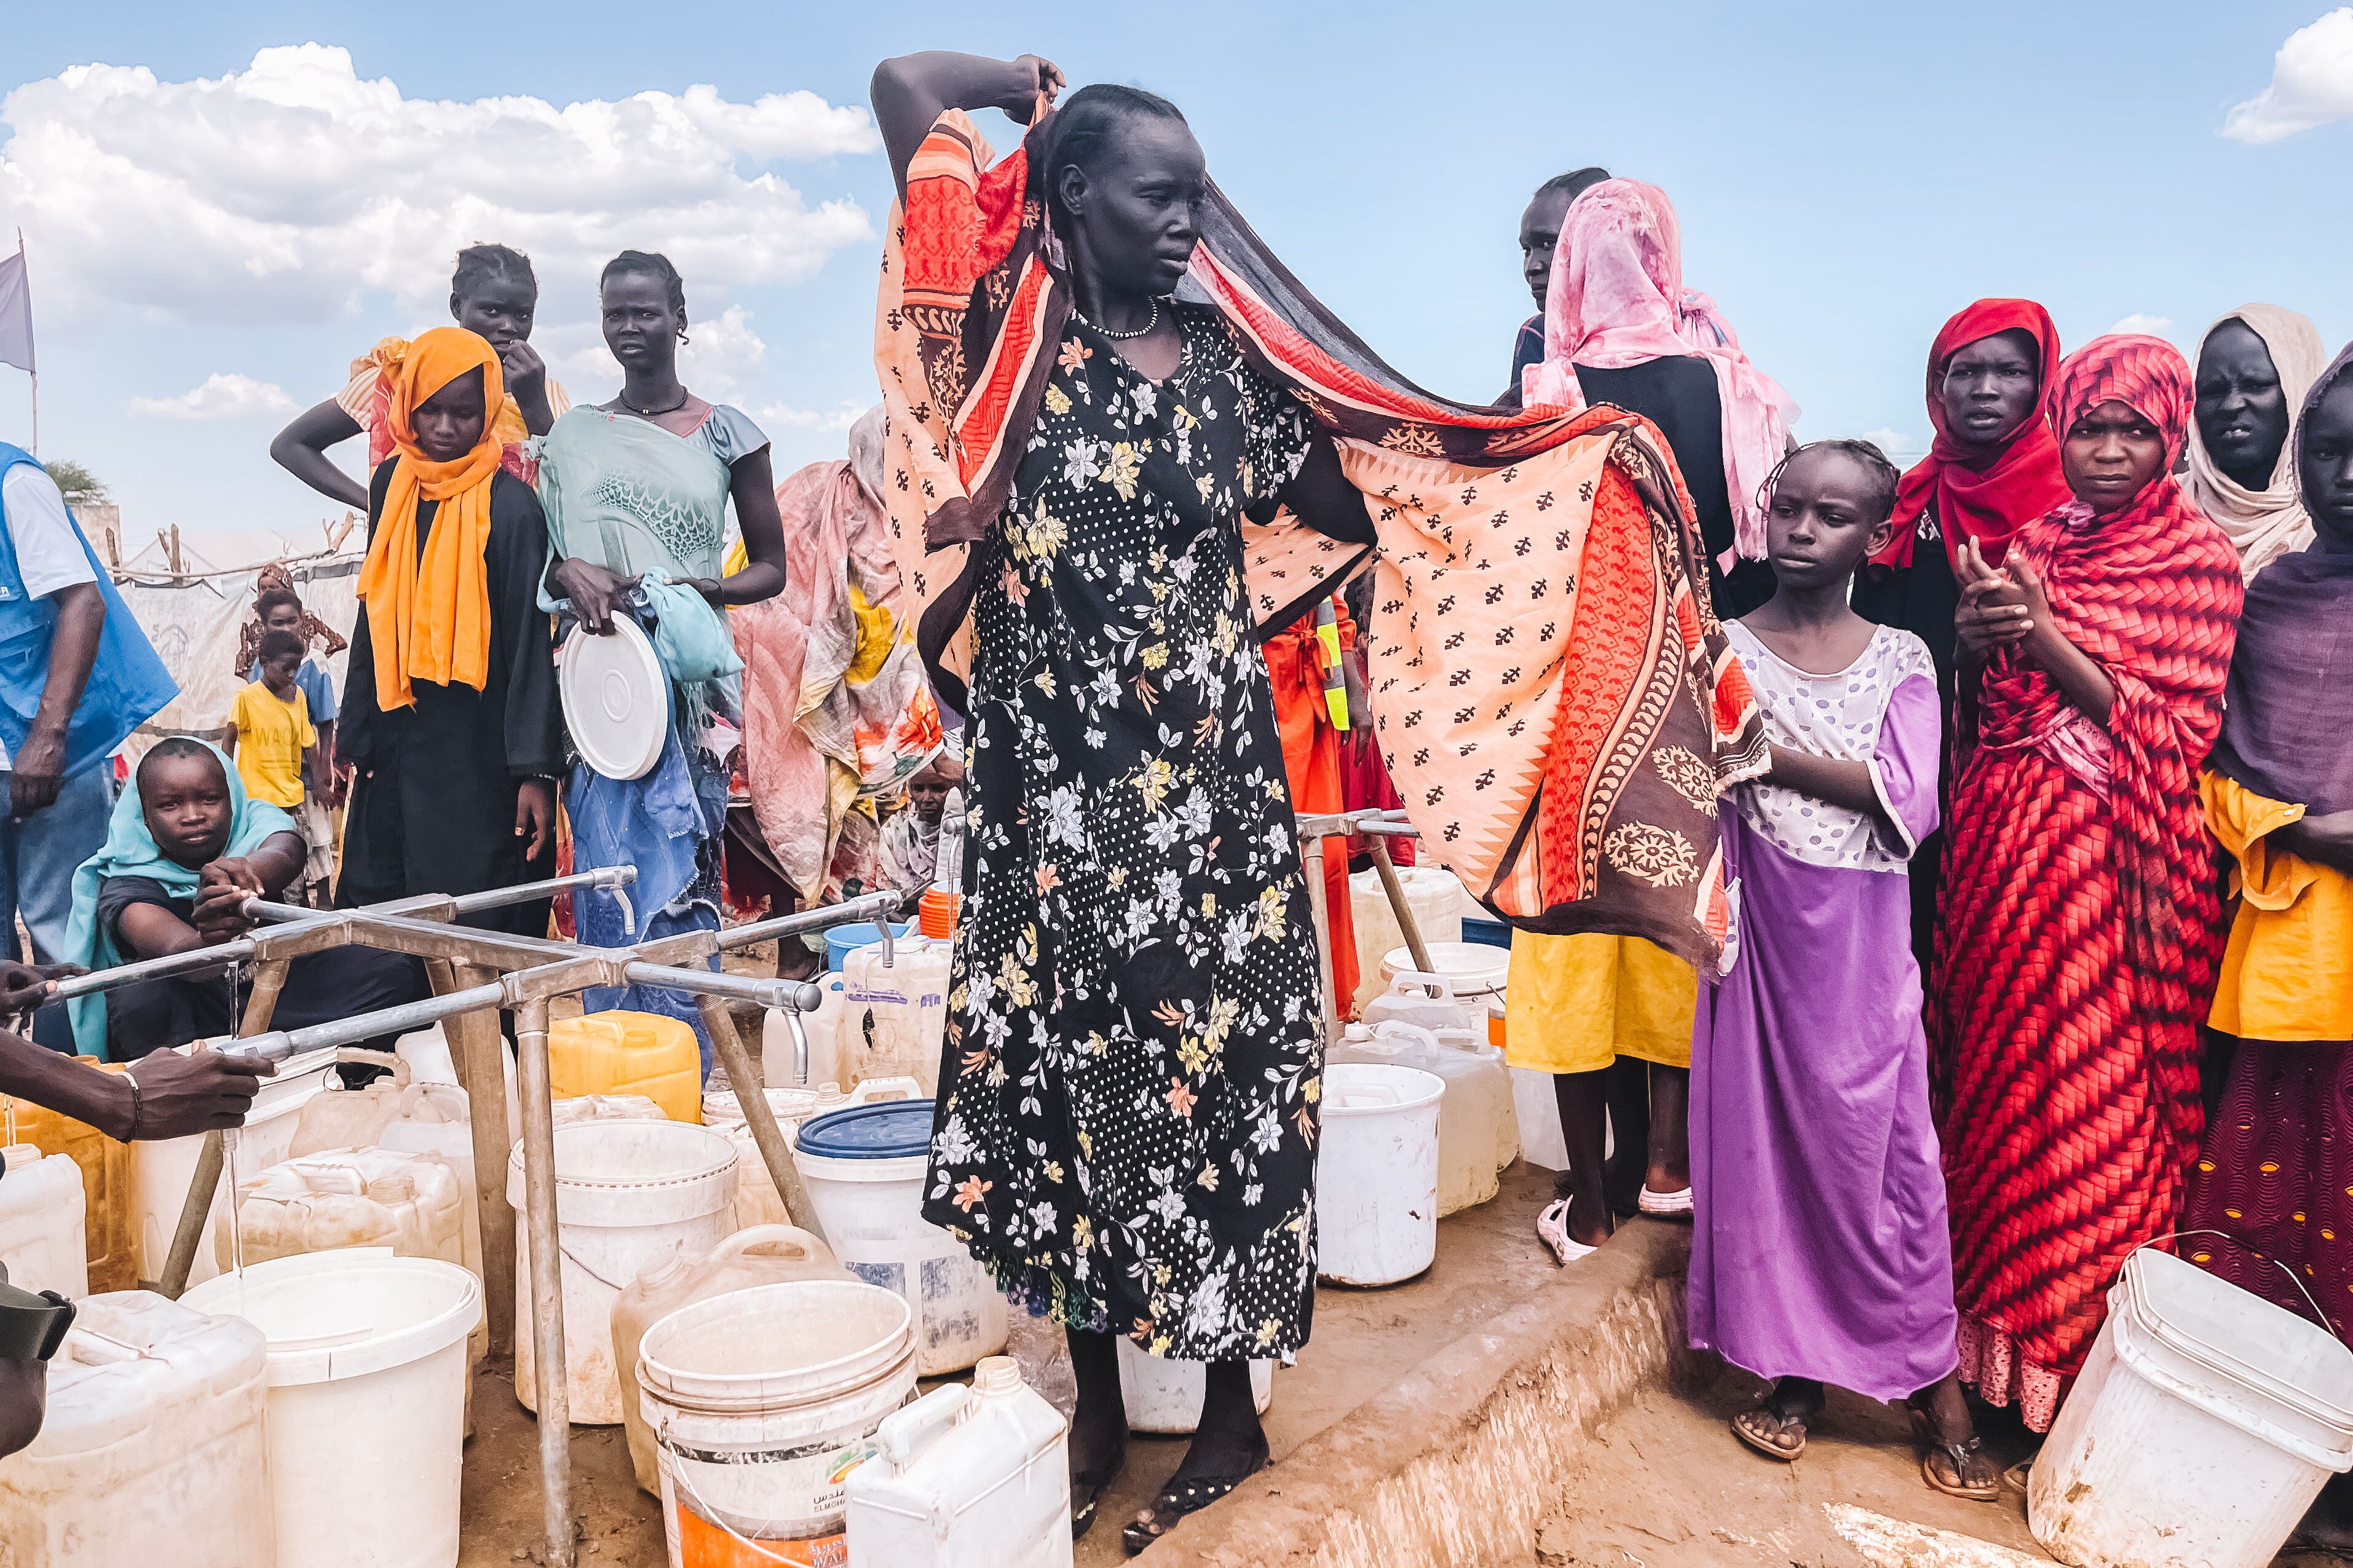 Varias mujeres refugiadas hacen cola para obtener agua limpia en uno de los puntos de suministro del centro de tránsito de Renk, en Sudán del Sur.